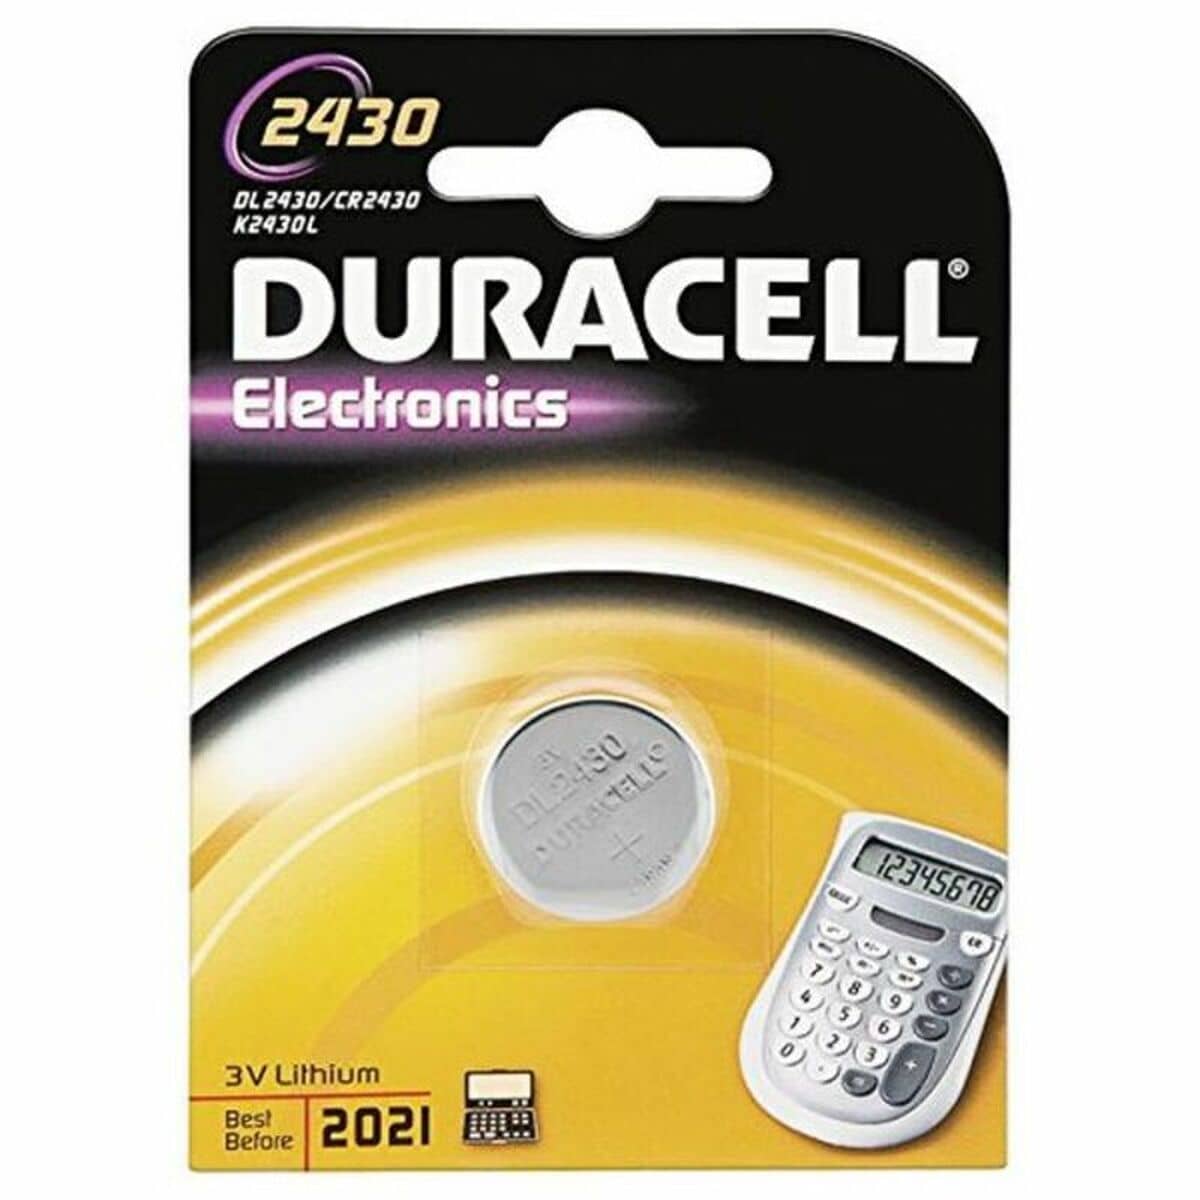 Duracell Pila especial de botón de litio 2430 de 3 V, paquete de 1 unidad  DL2430/CR2430, diseñada para uso en llaves con sensor magnético, básculas,  elementos vestibles y dispositivos médicos : : Electrónica